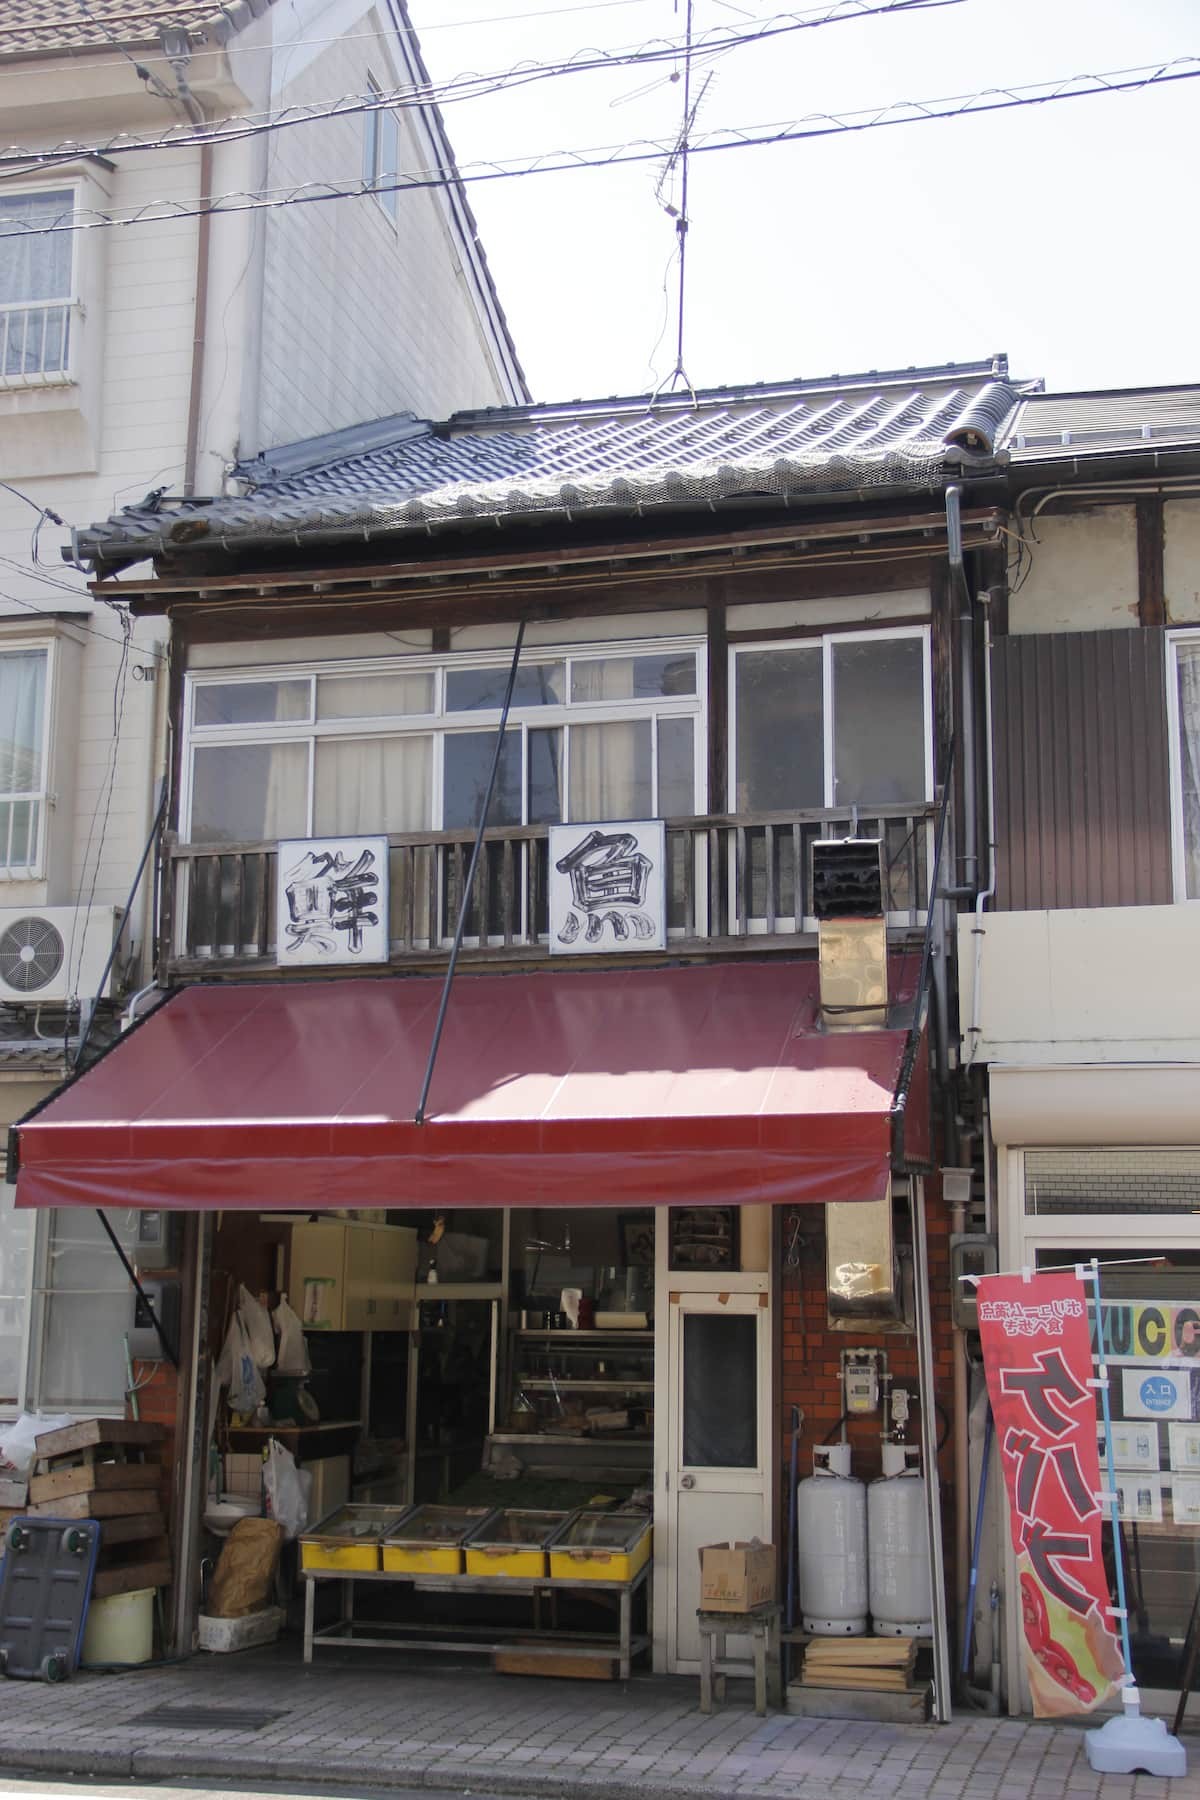 鳥取県倉吉市の観光地・白壁土蔵群でみつけたエモい鮮魚店